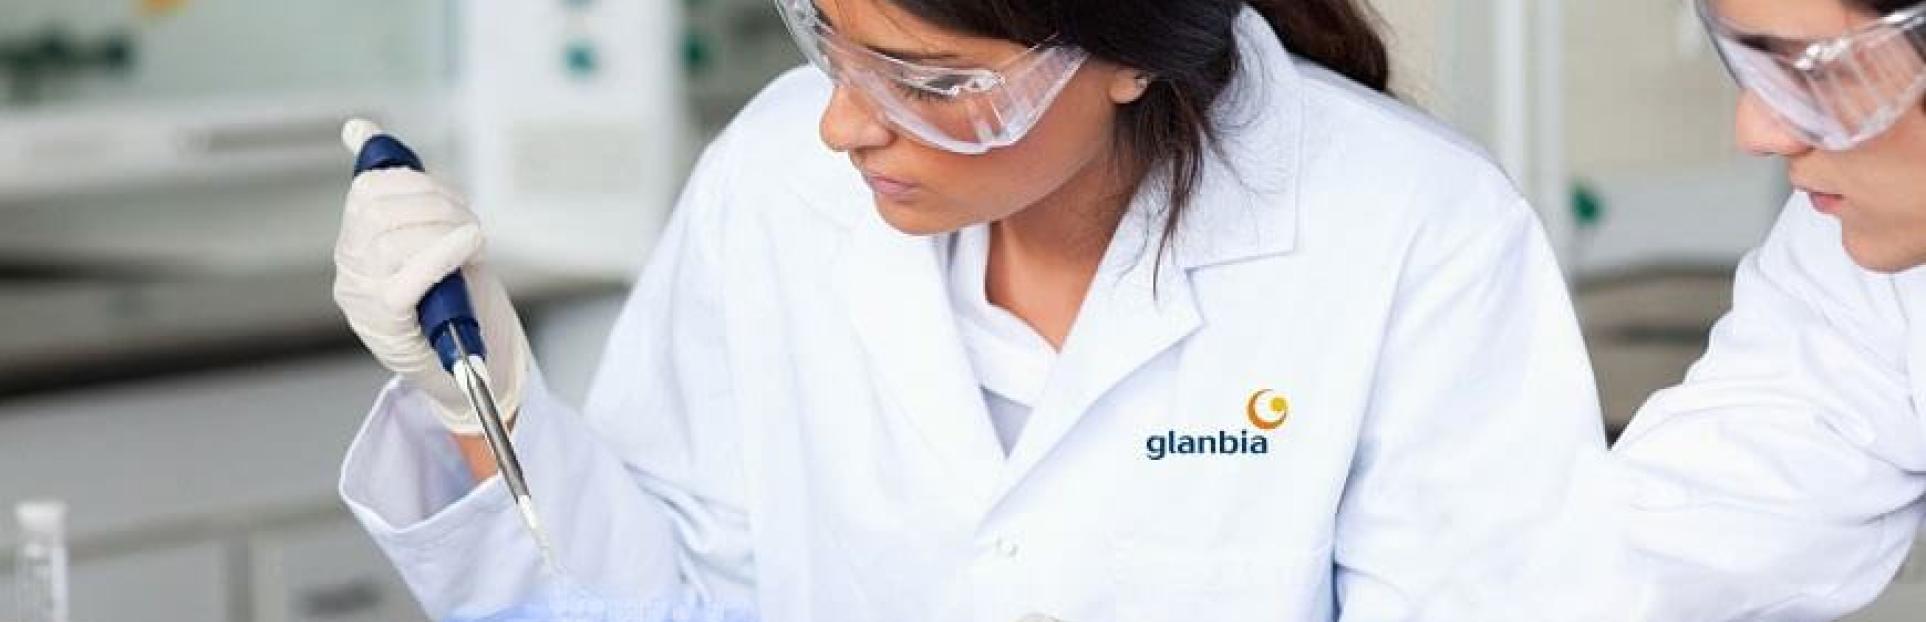 Glanbia woman in a lab